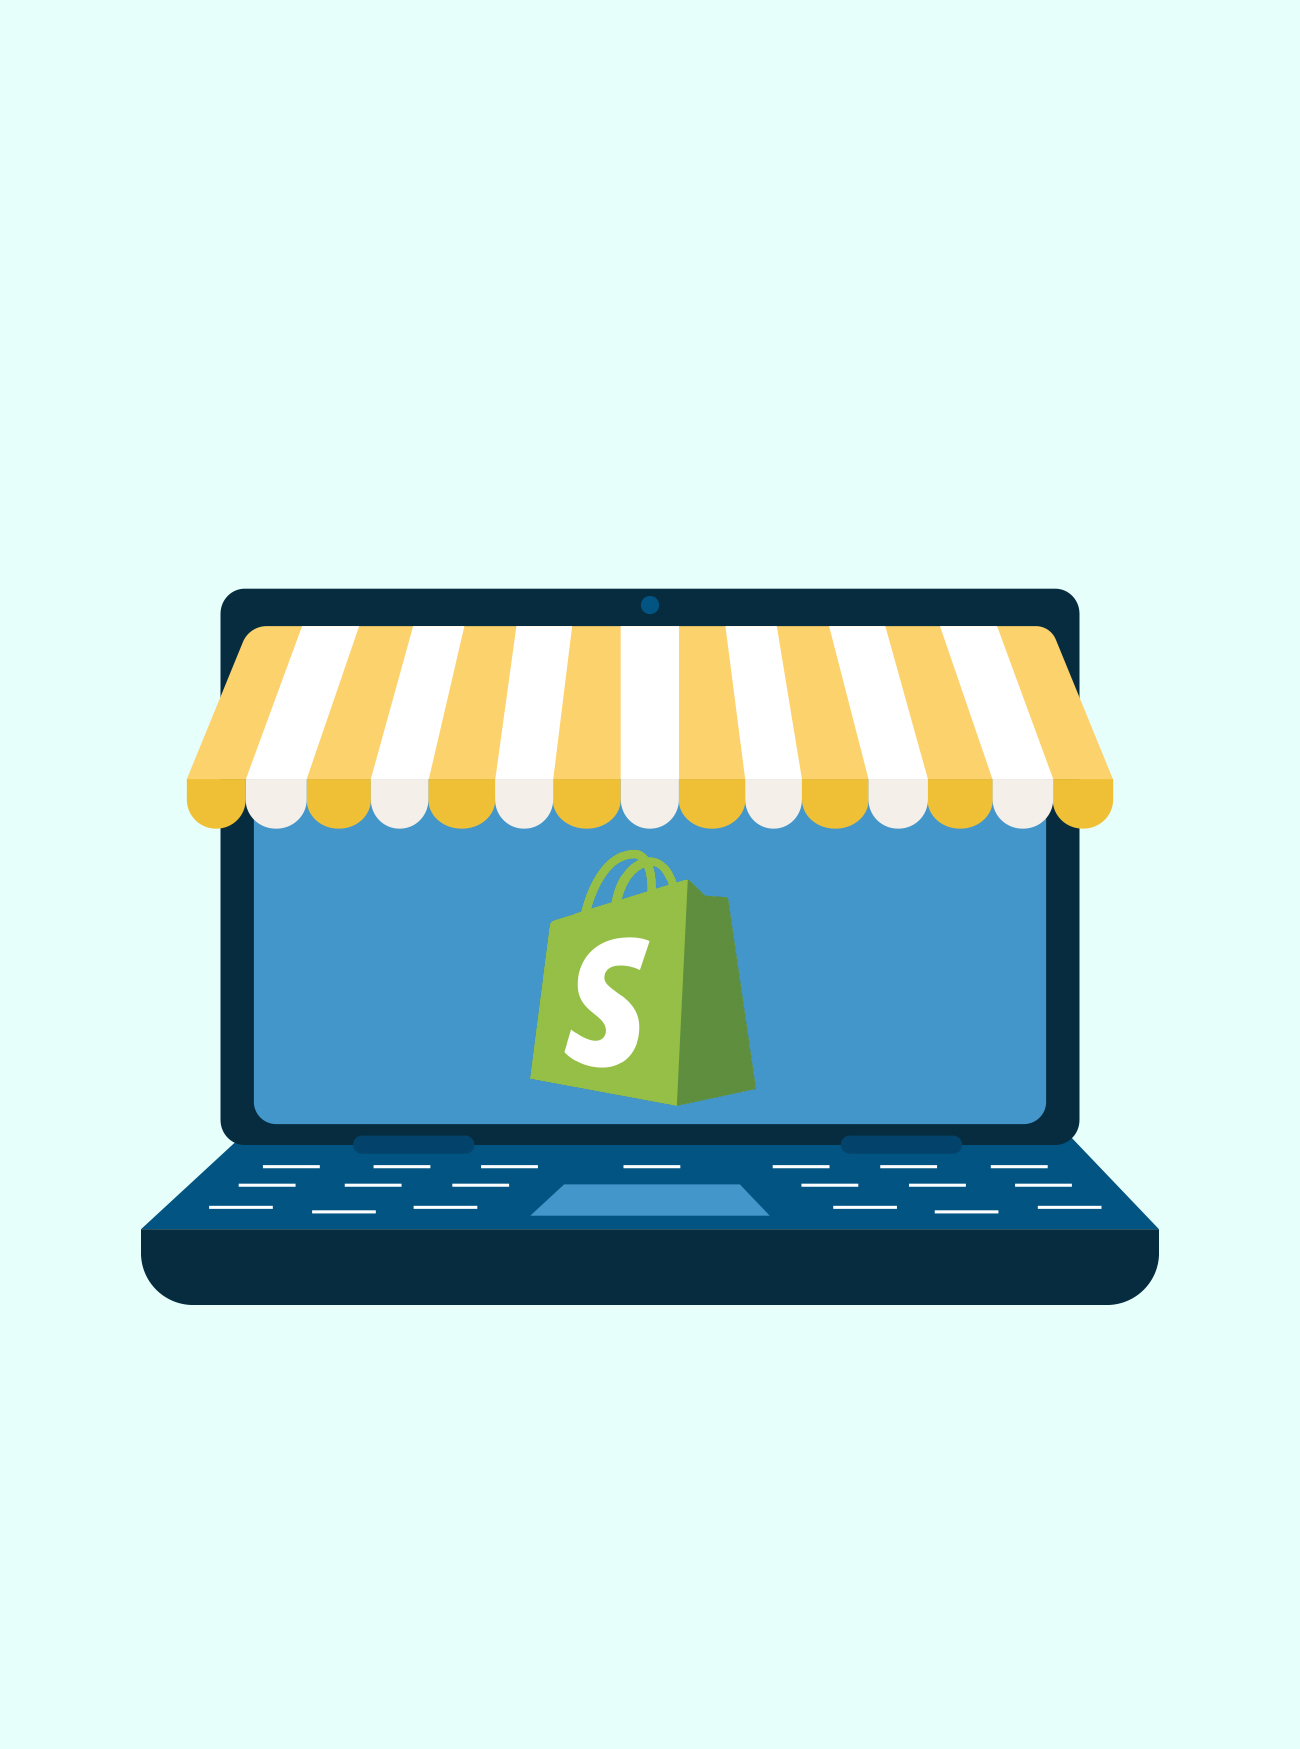 vserve | Shopify eCommerce Development Services